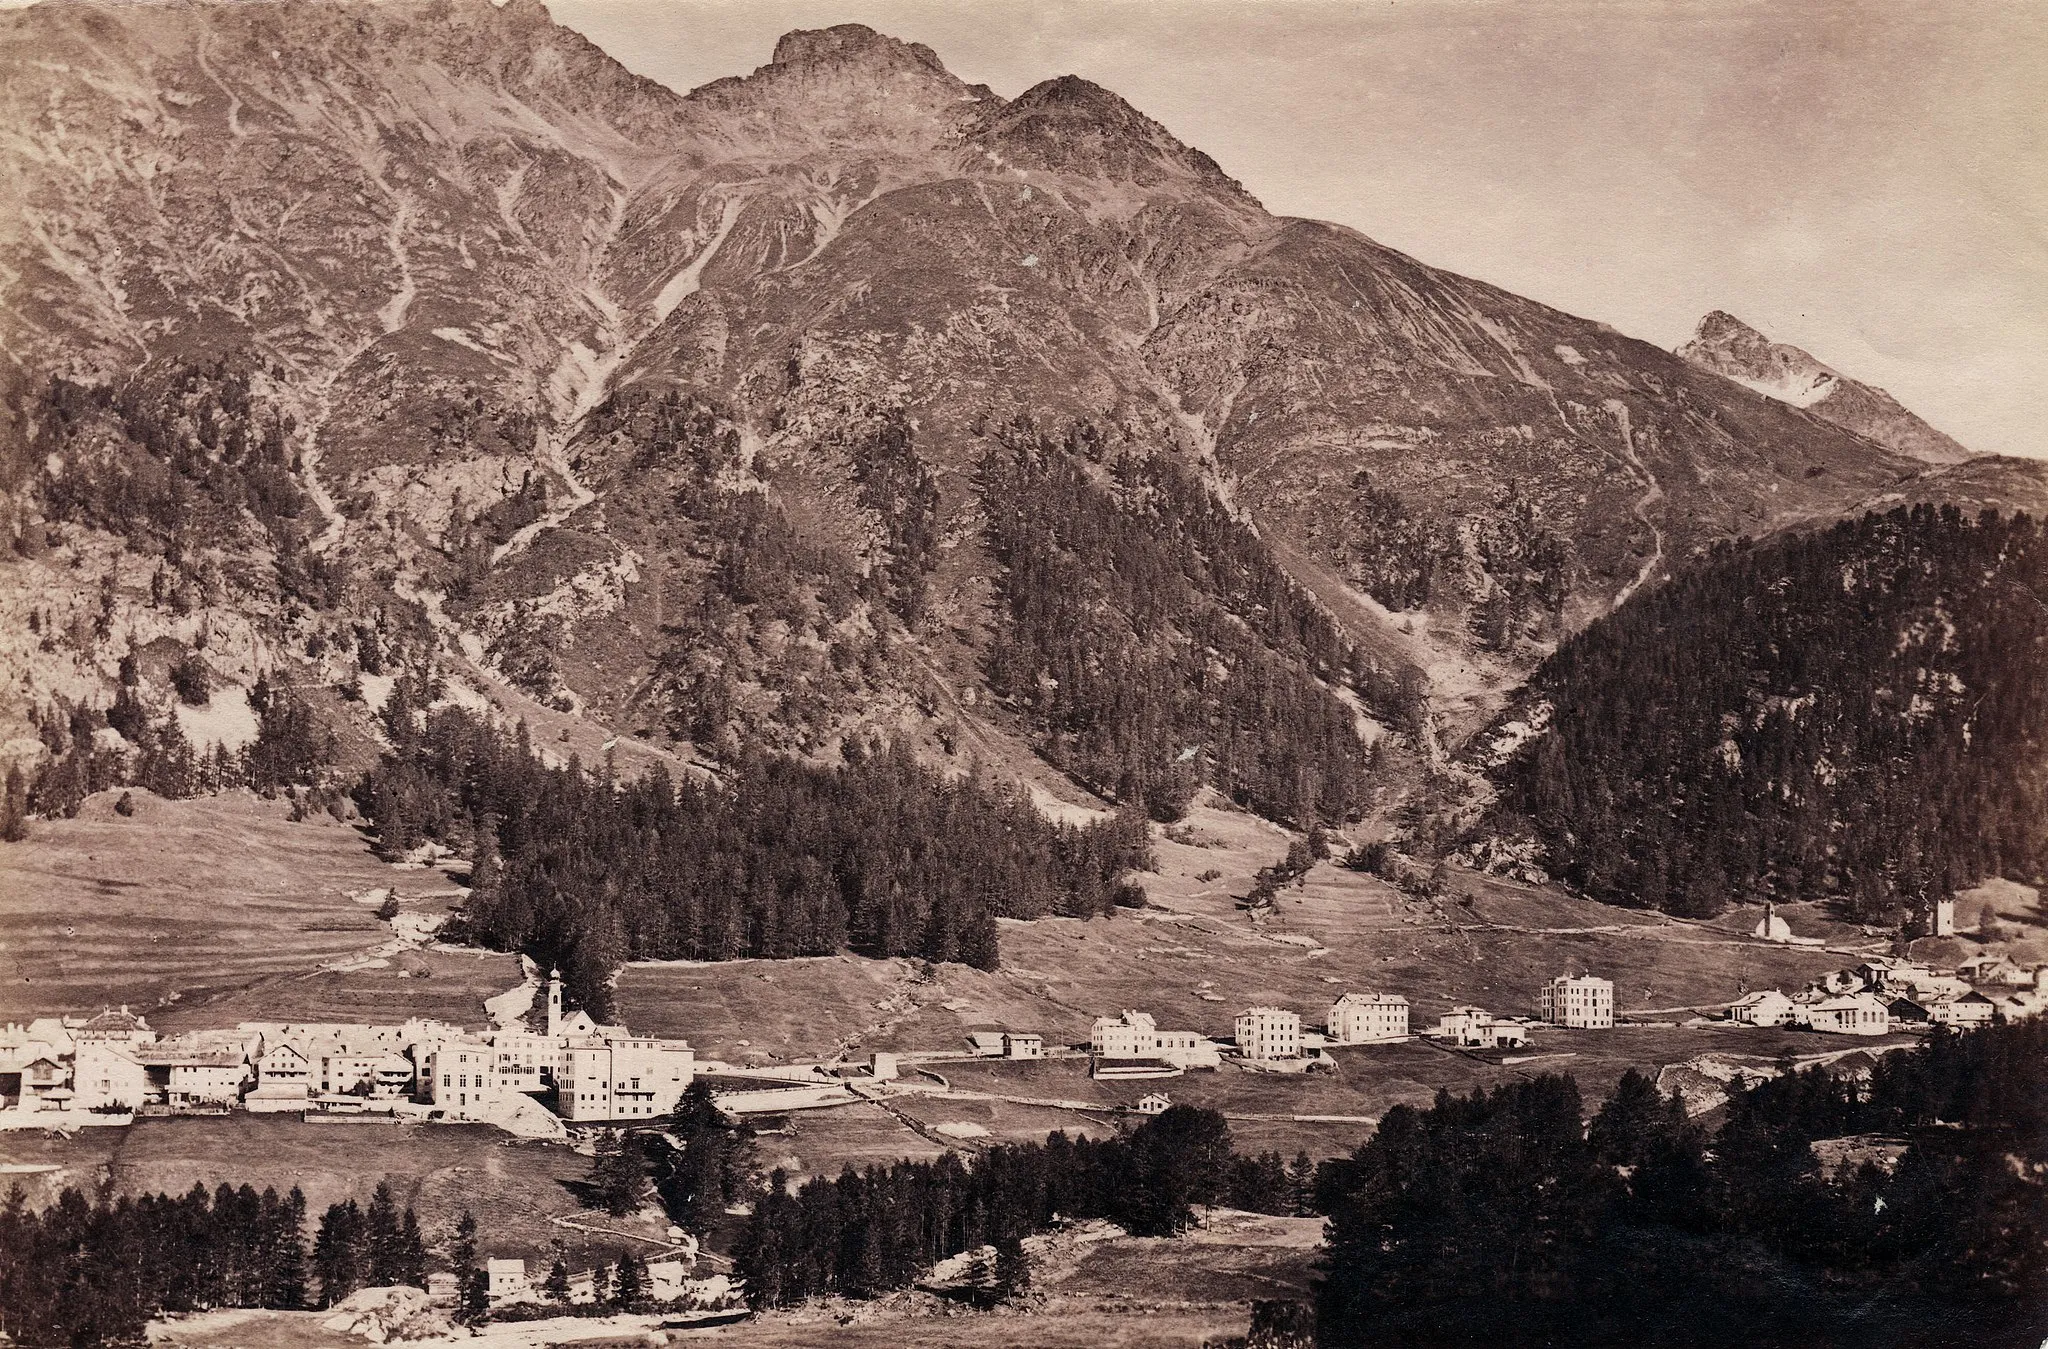 Immagine di Svizzera Orientale